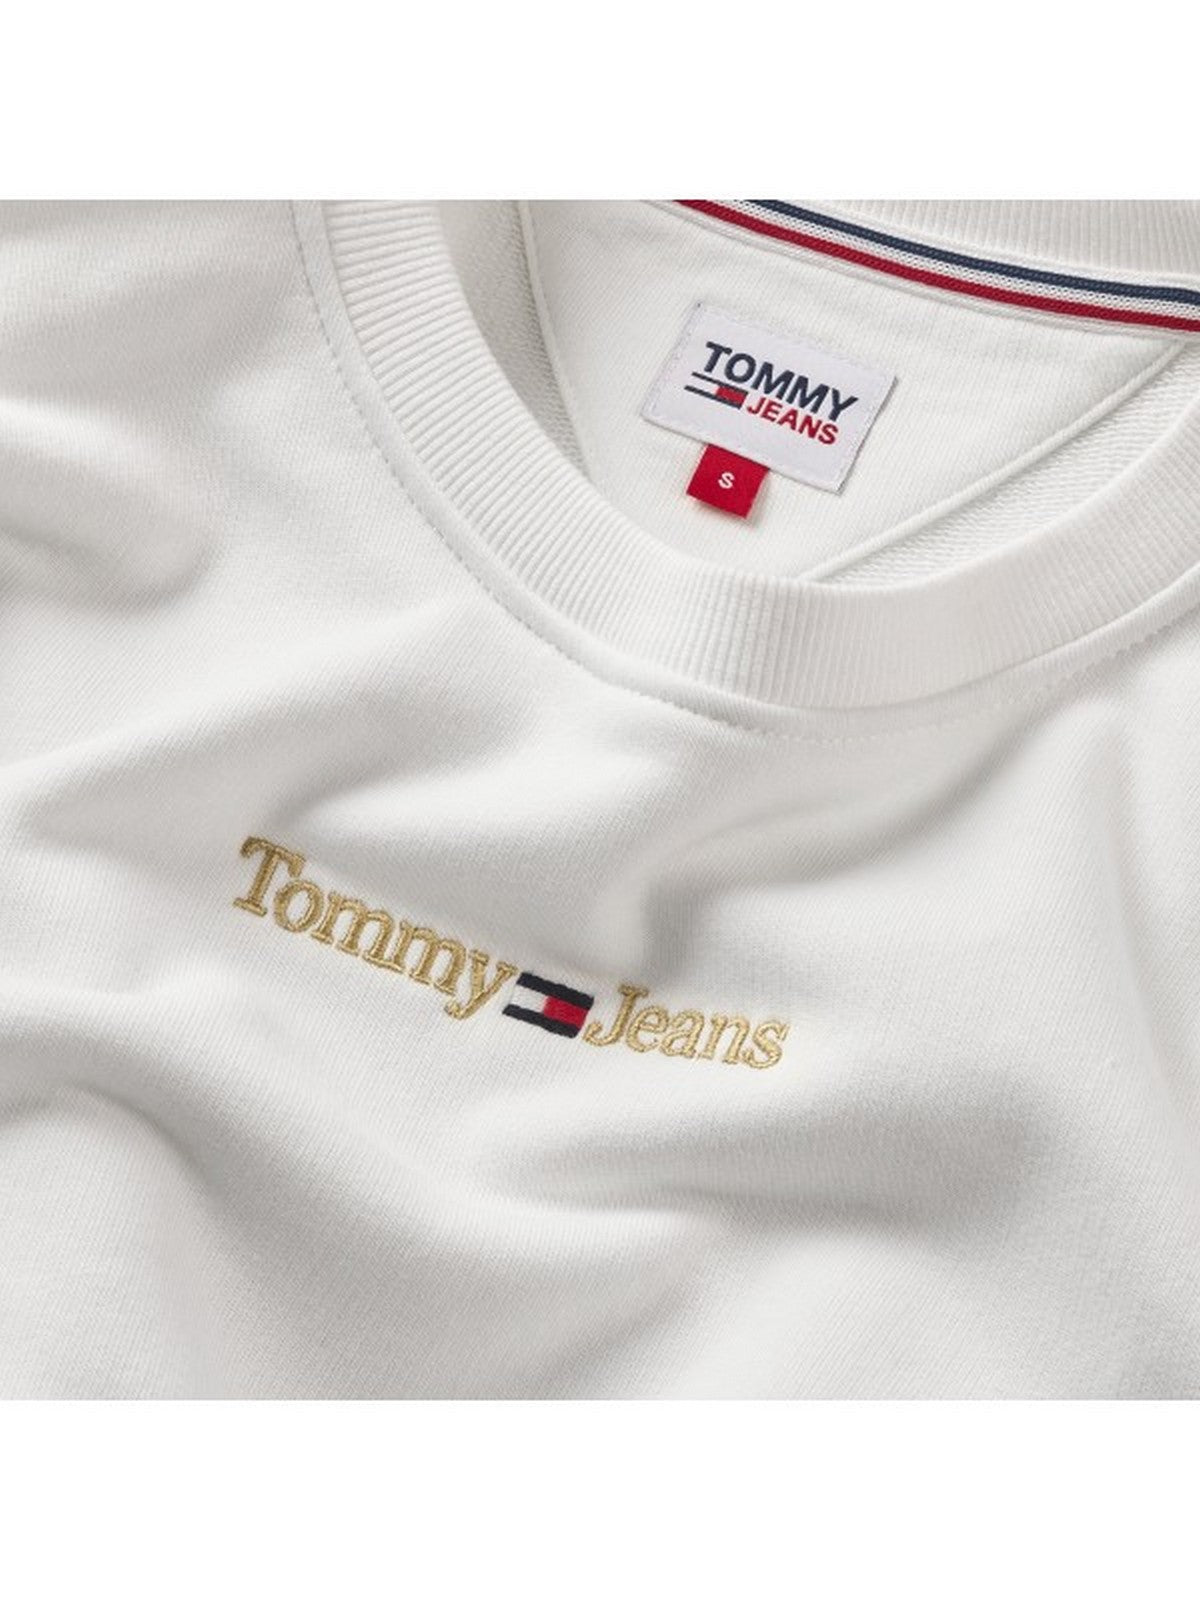 TOMMY HILFIGER Sweatshirt Femme DW0DW16931 YBR Blanc